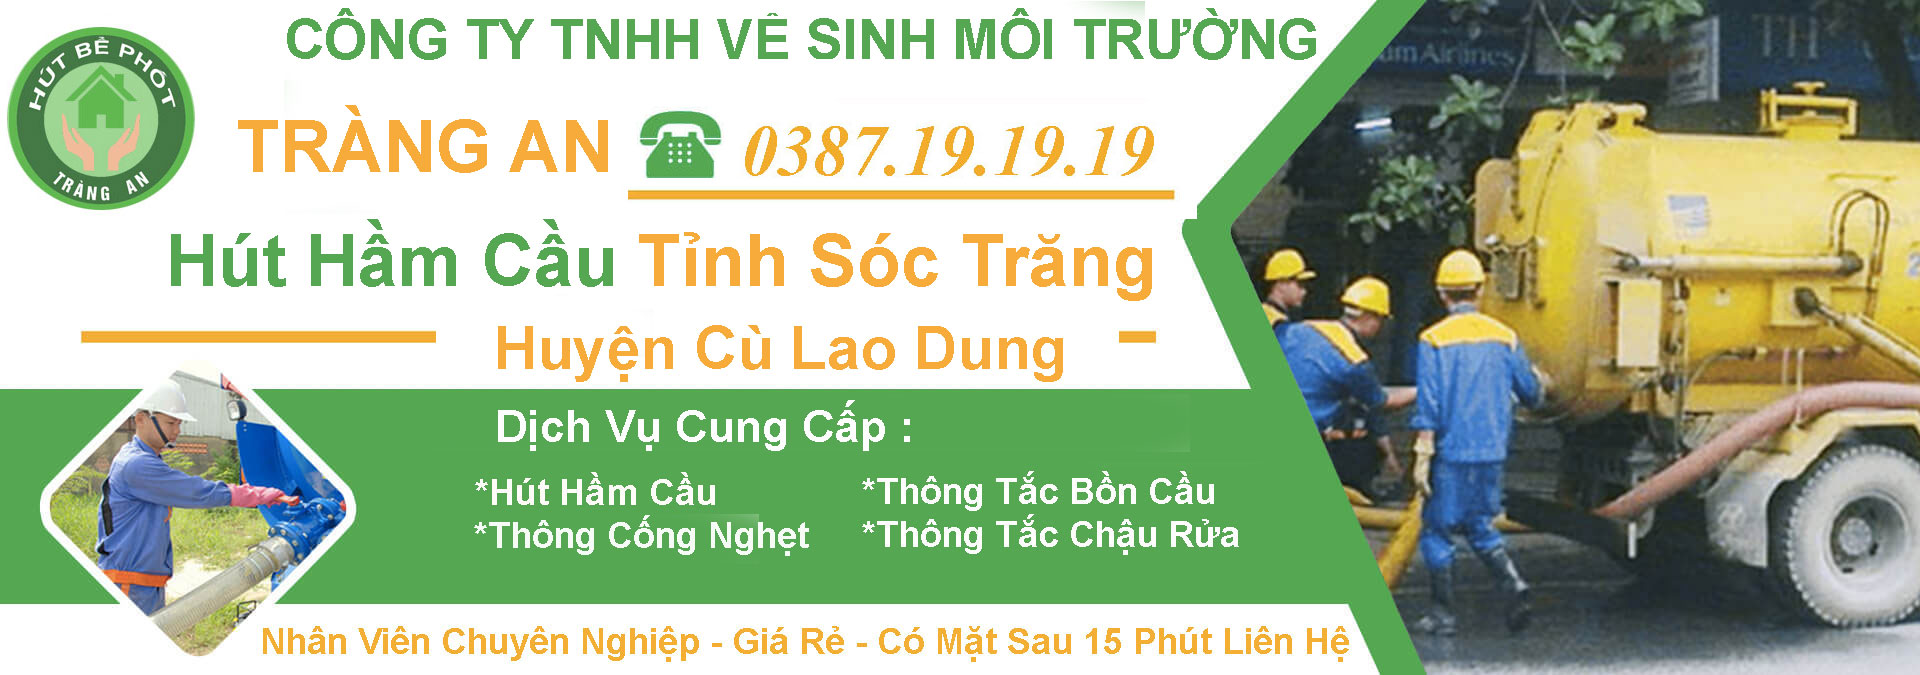 Hut Ham Cau Soc Trang Cu Lao Dung